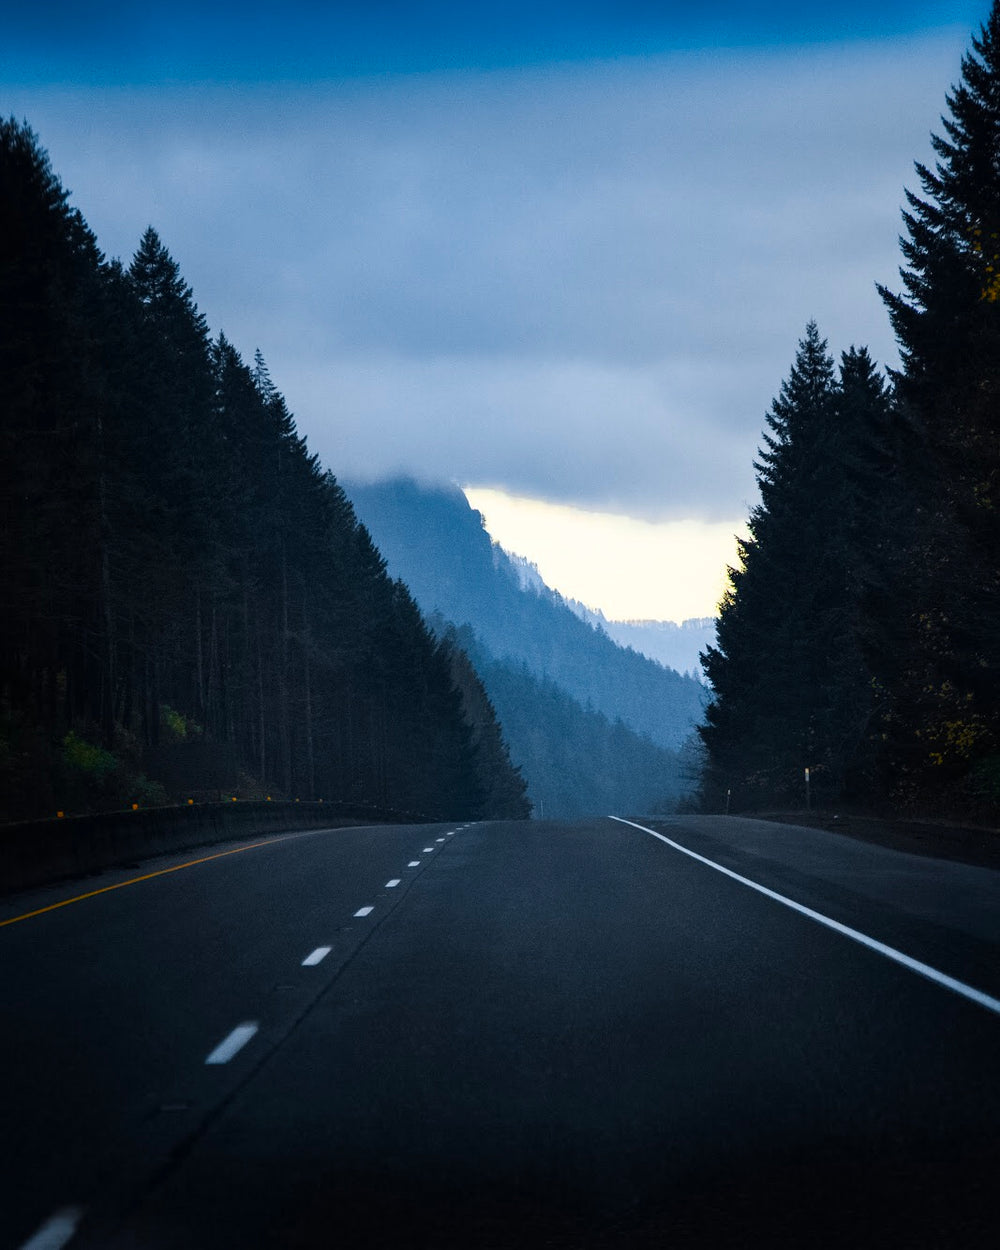 mountain road to nowhere